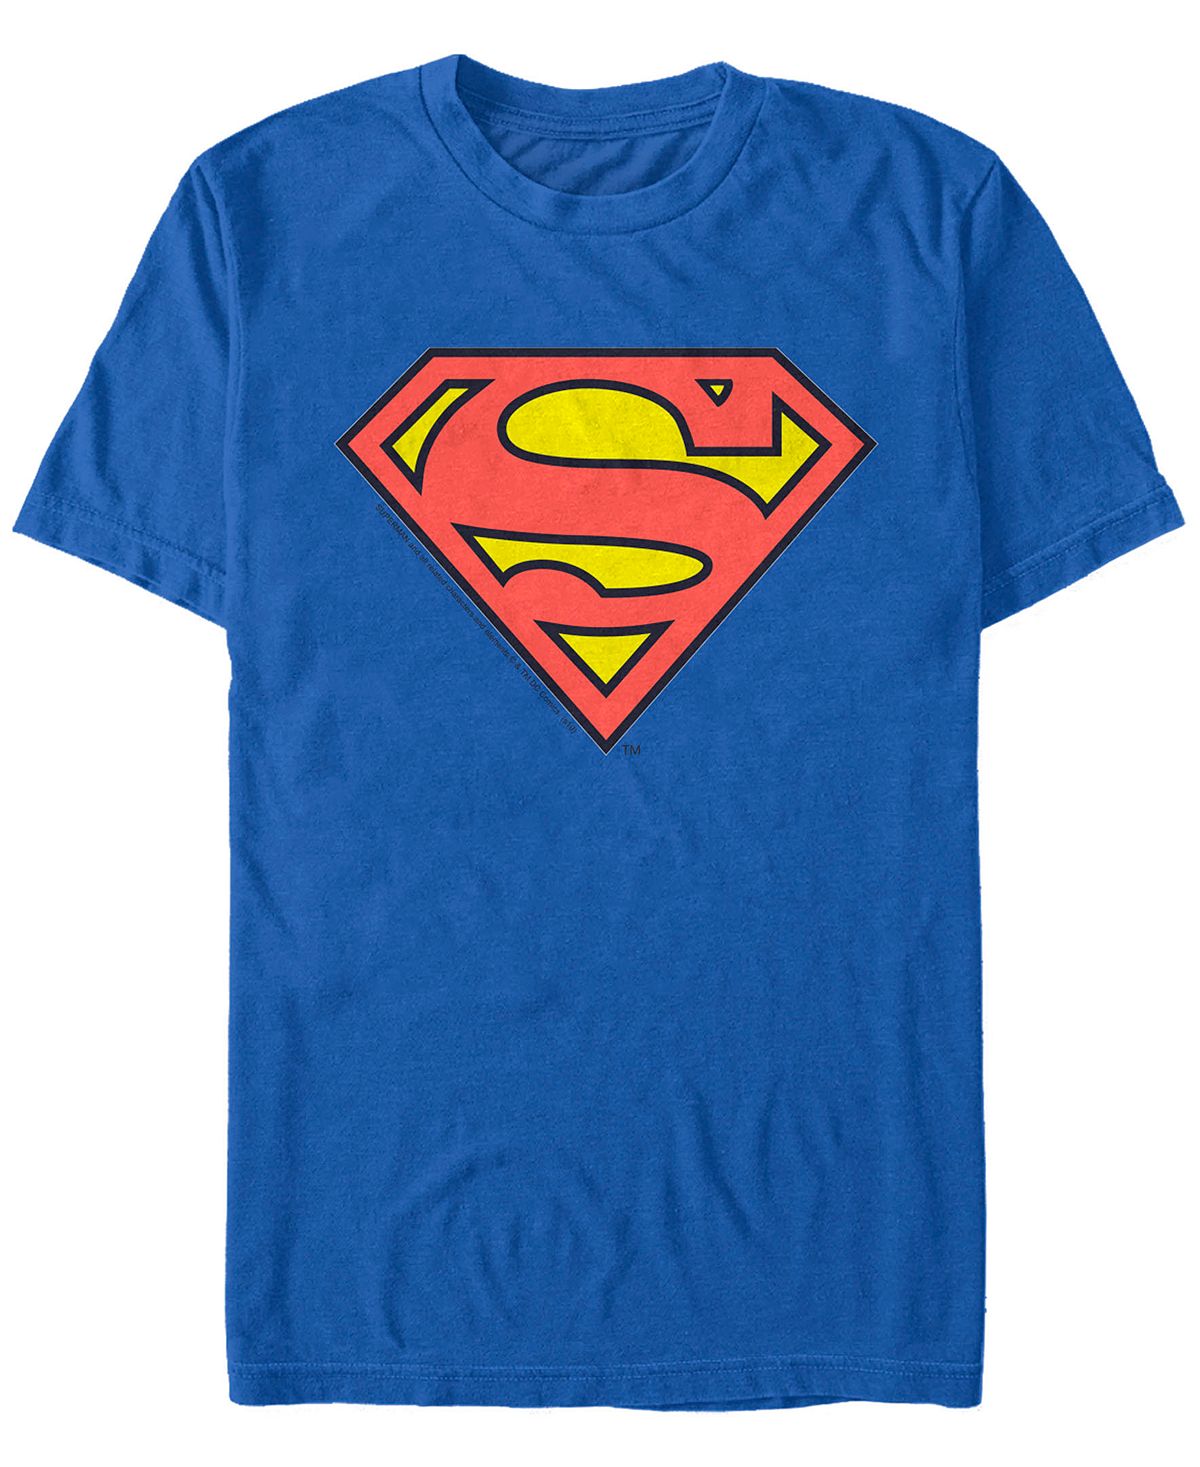 Мужская классическая футболка с коротким рукавом с логотипом супермена dc Fifth Sun цена и фото